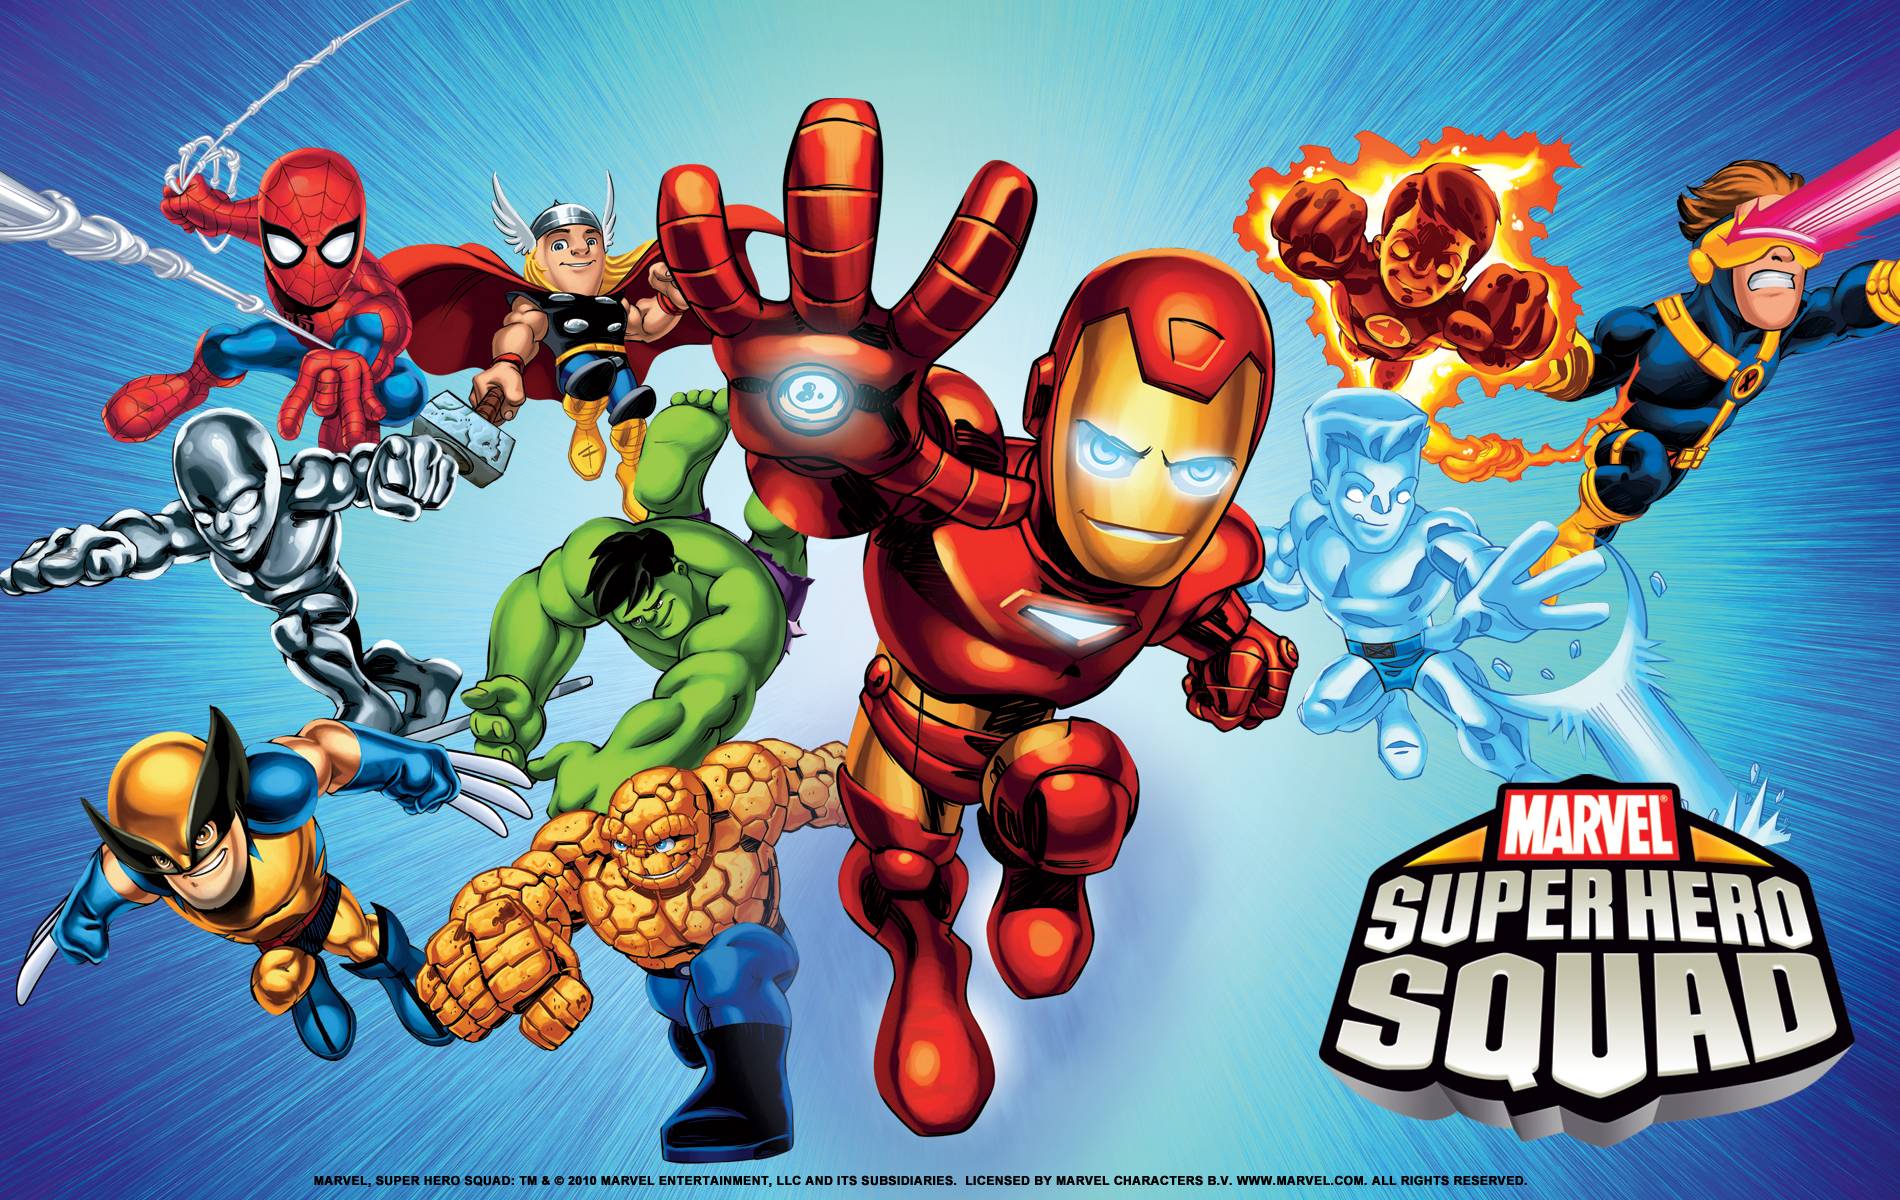 Super Hero Squad Wallpapers Wallpaper Cave - wallpaper of the game marvel super hero squad roblox